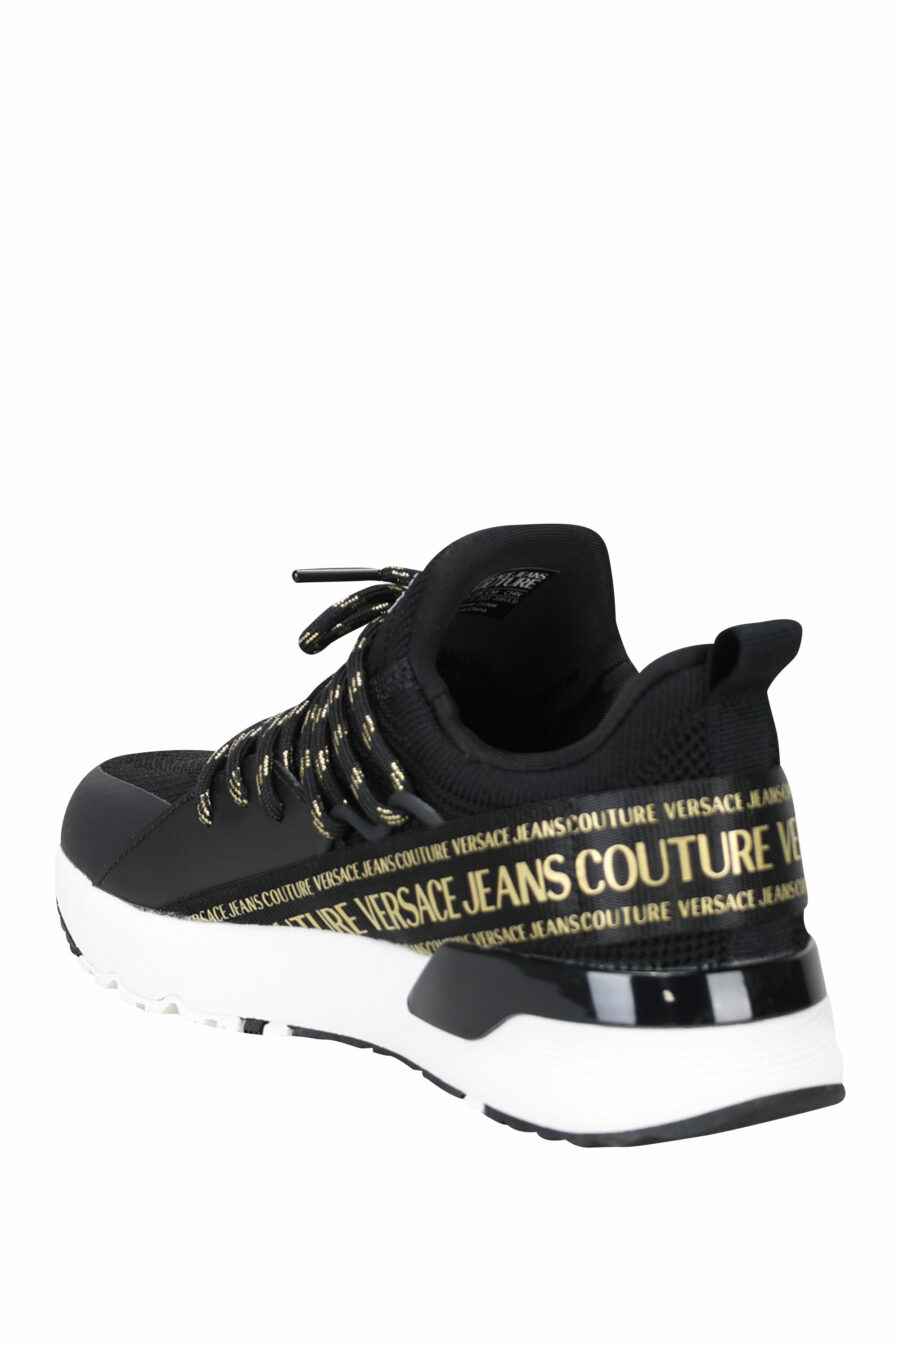 Zapatillas negras "troadlop" con logo en cinta dorado - 8052019454222 3